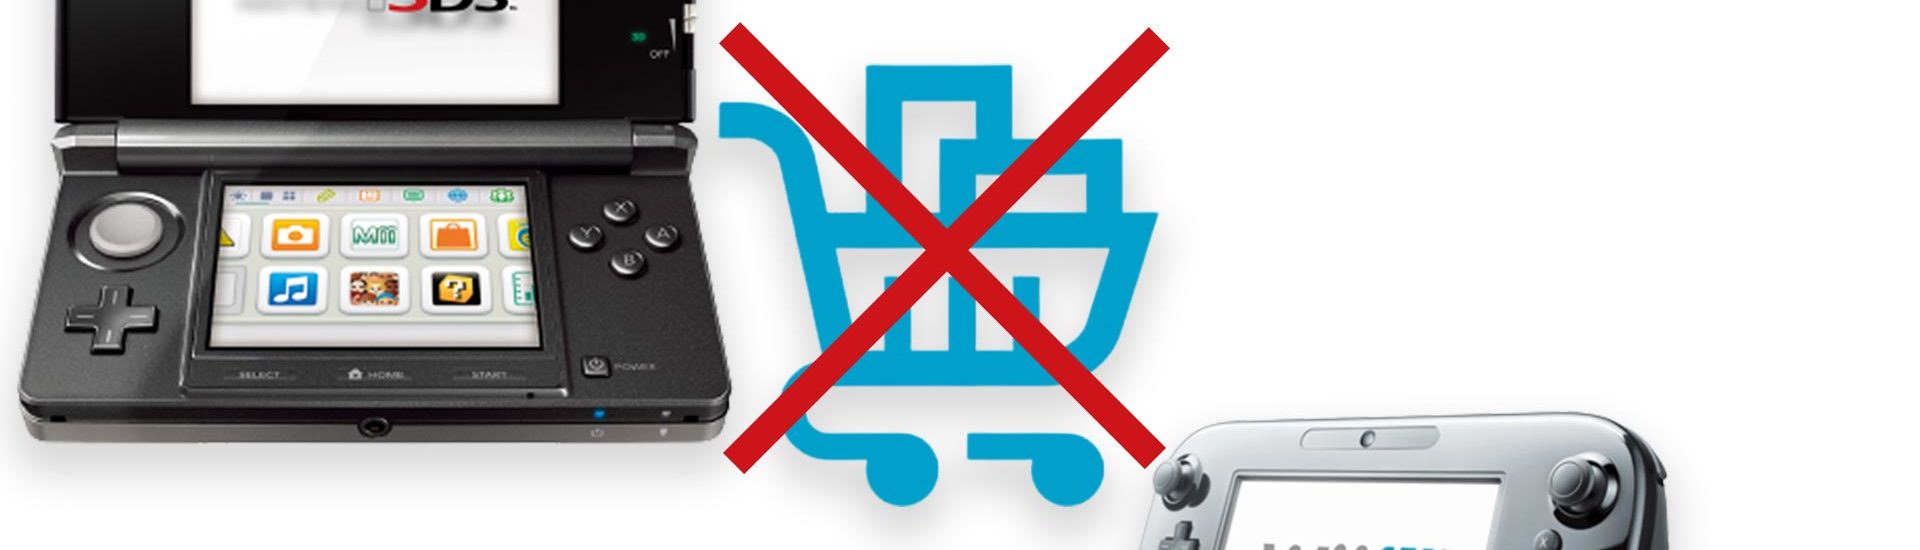 Nintendo schaltet Funktionen des Nintendo eShop für Wii U und 3DS ab